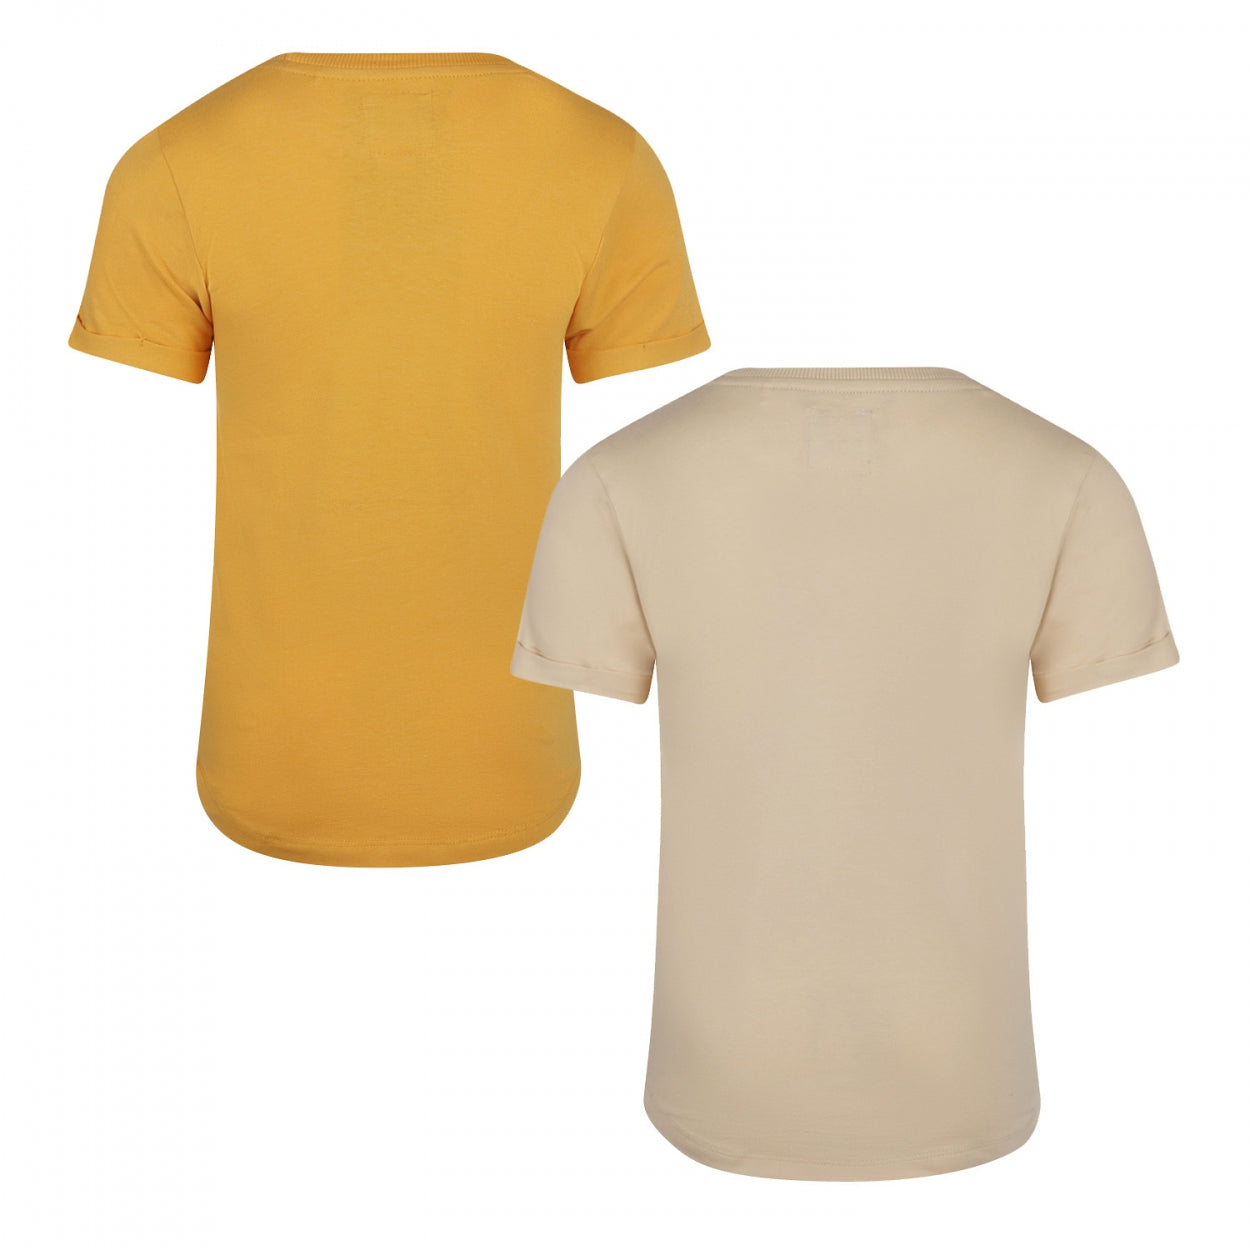 Jongens T-shirt long back ss 2-pack van Koko Noko in de kleur Warm yellow in maat 128.